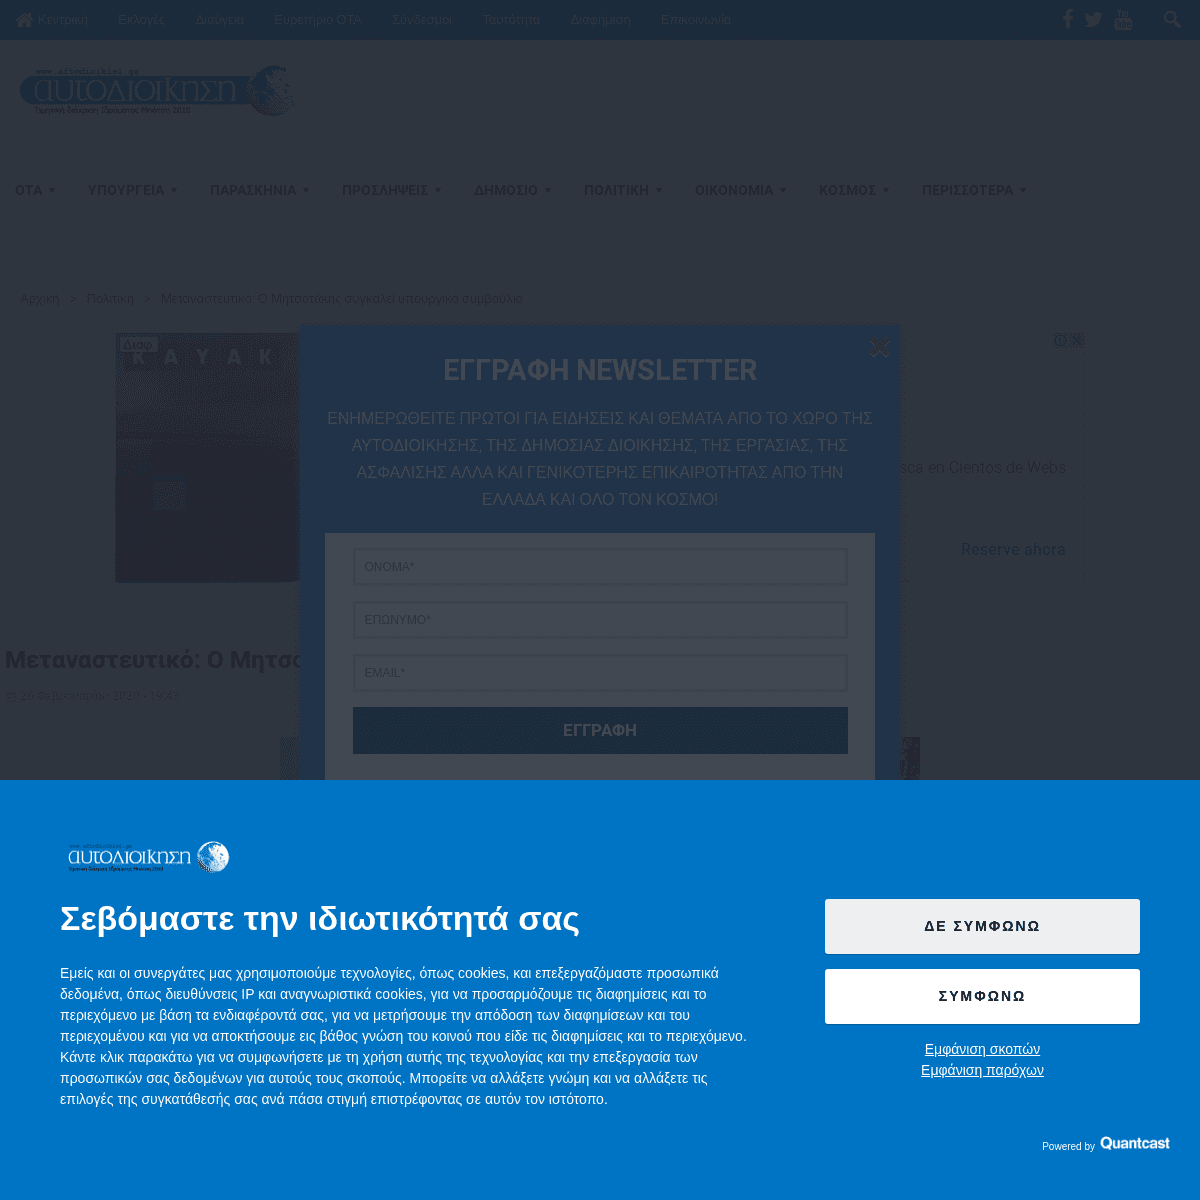 A complete backup of www.aftodioikisi.gr/politiki/metanasteytiko-o-mitsotakis-sygkalei-ypoyrgiko-symvoylio/